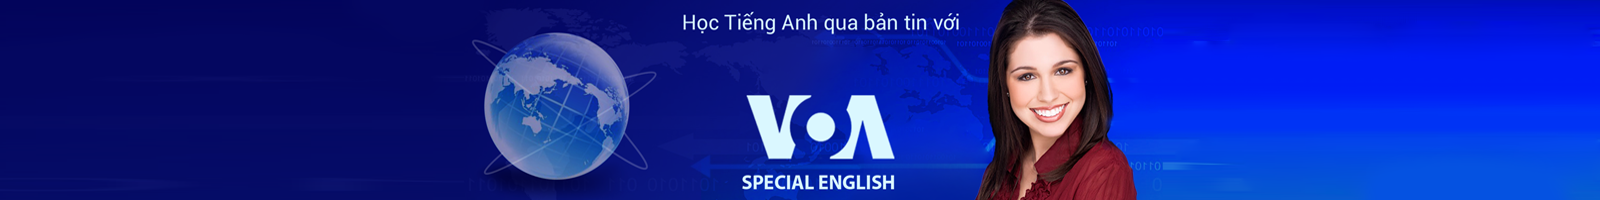 Vocabulary for VOA Special English